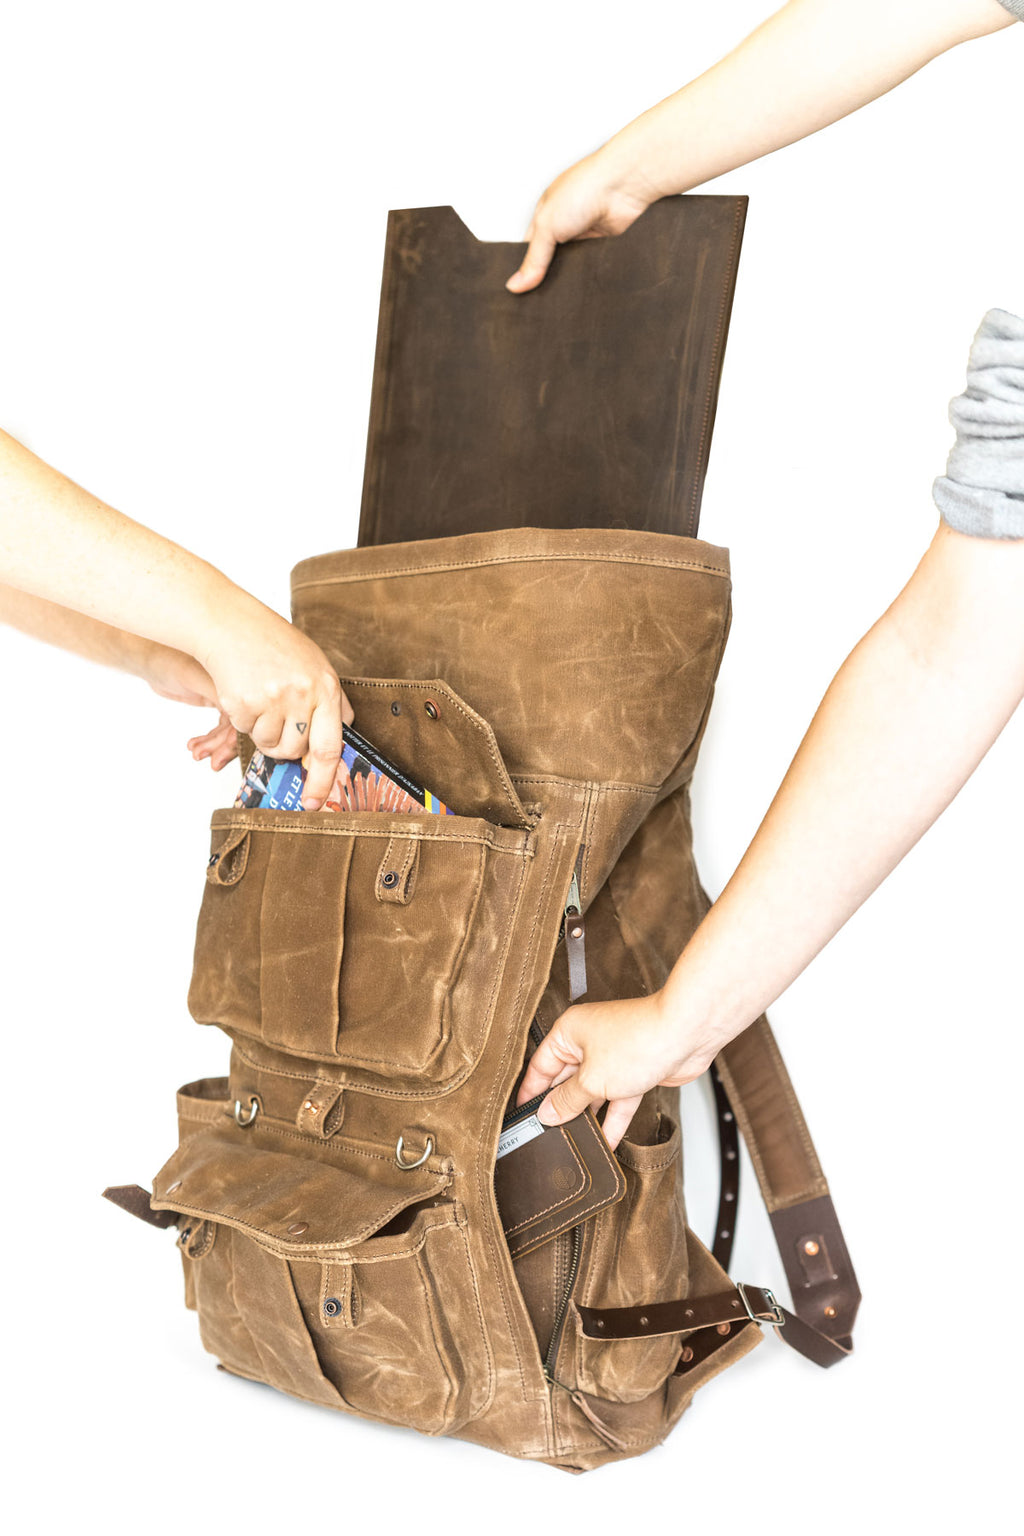 Cadmus Backpack in Brush Brown